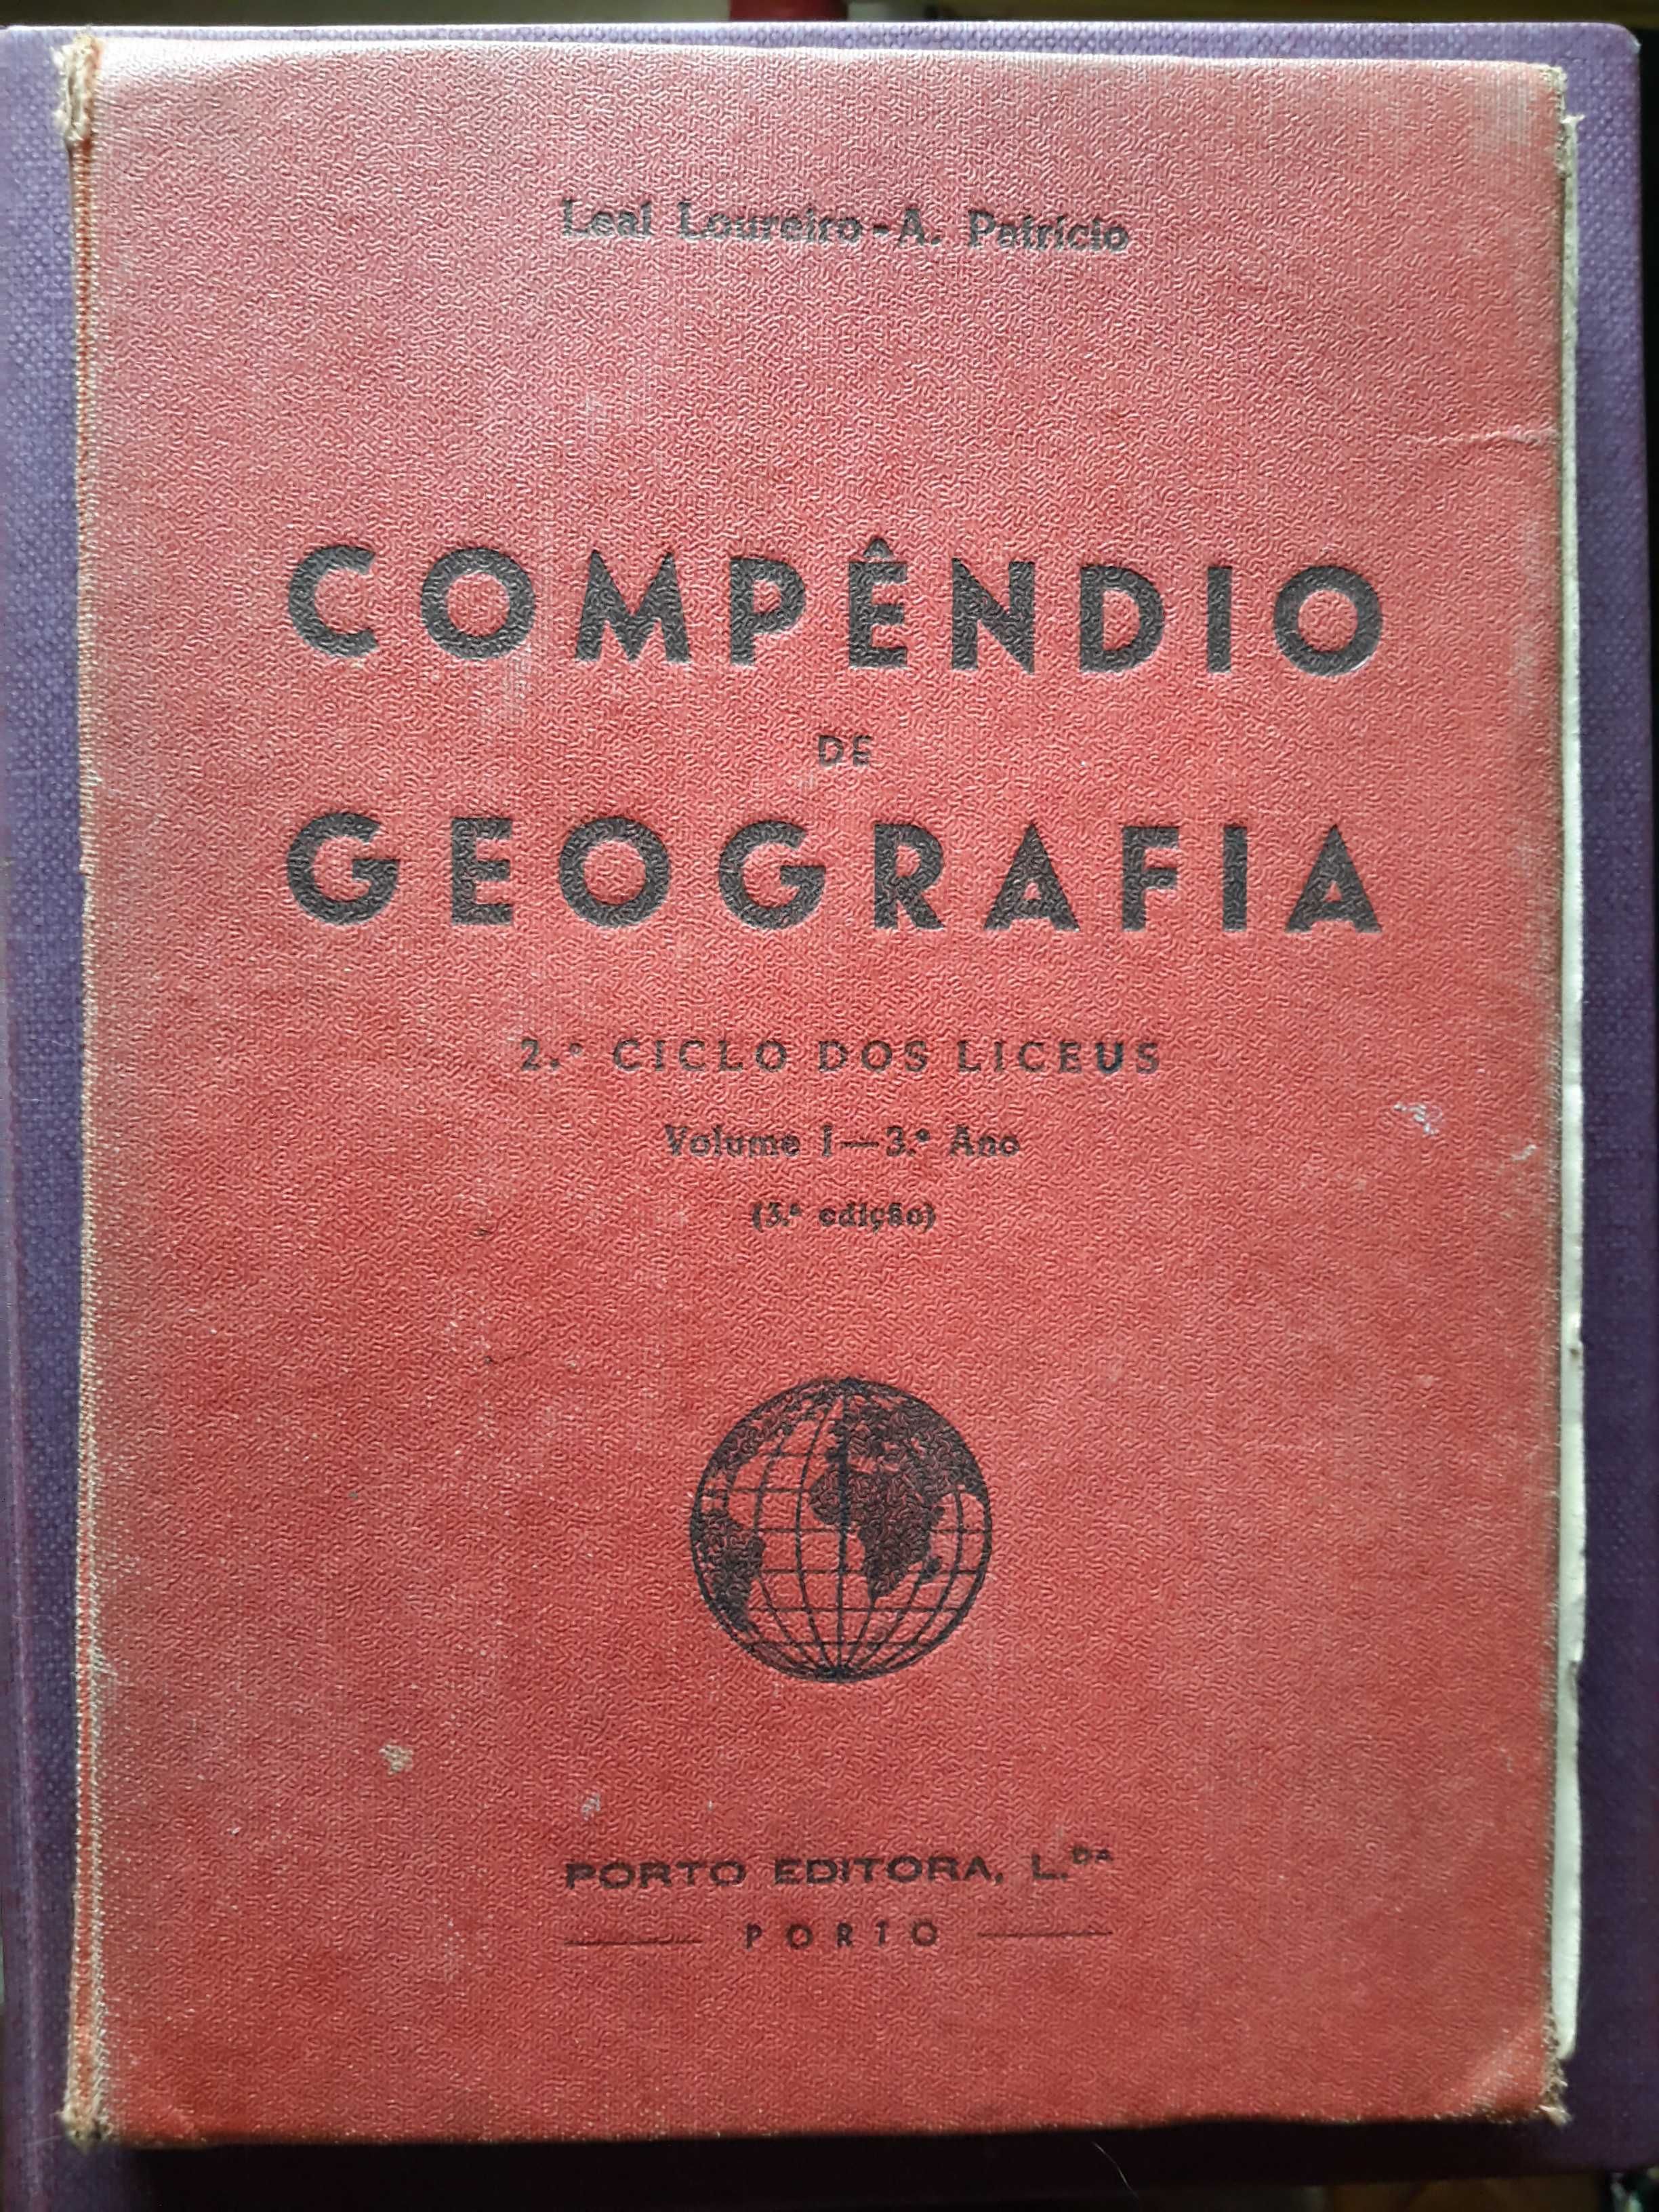 Compêndio de Geografia (1955)